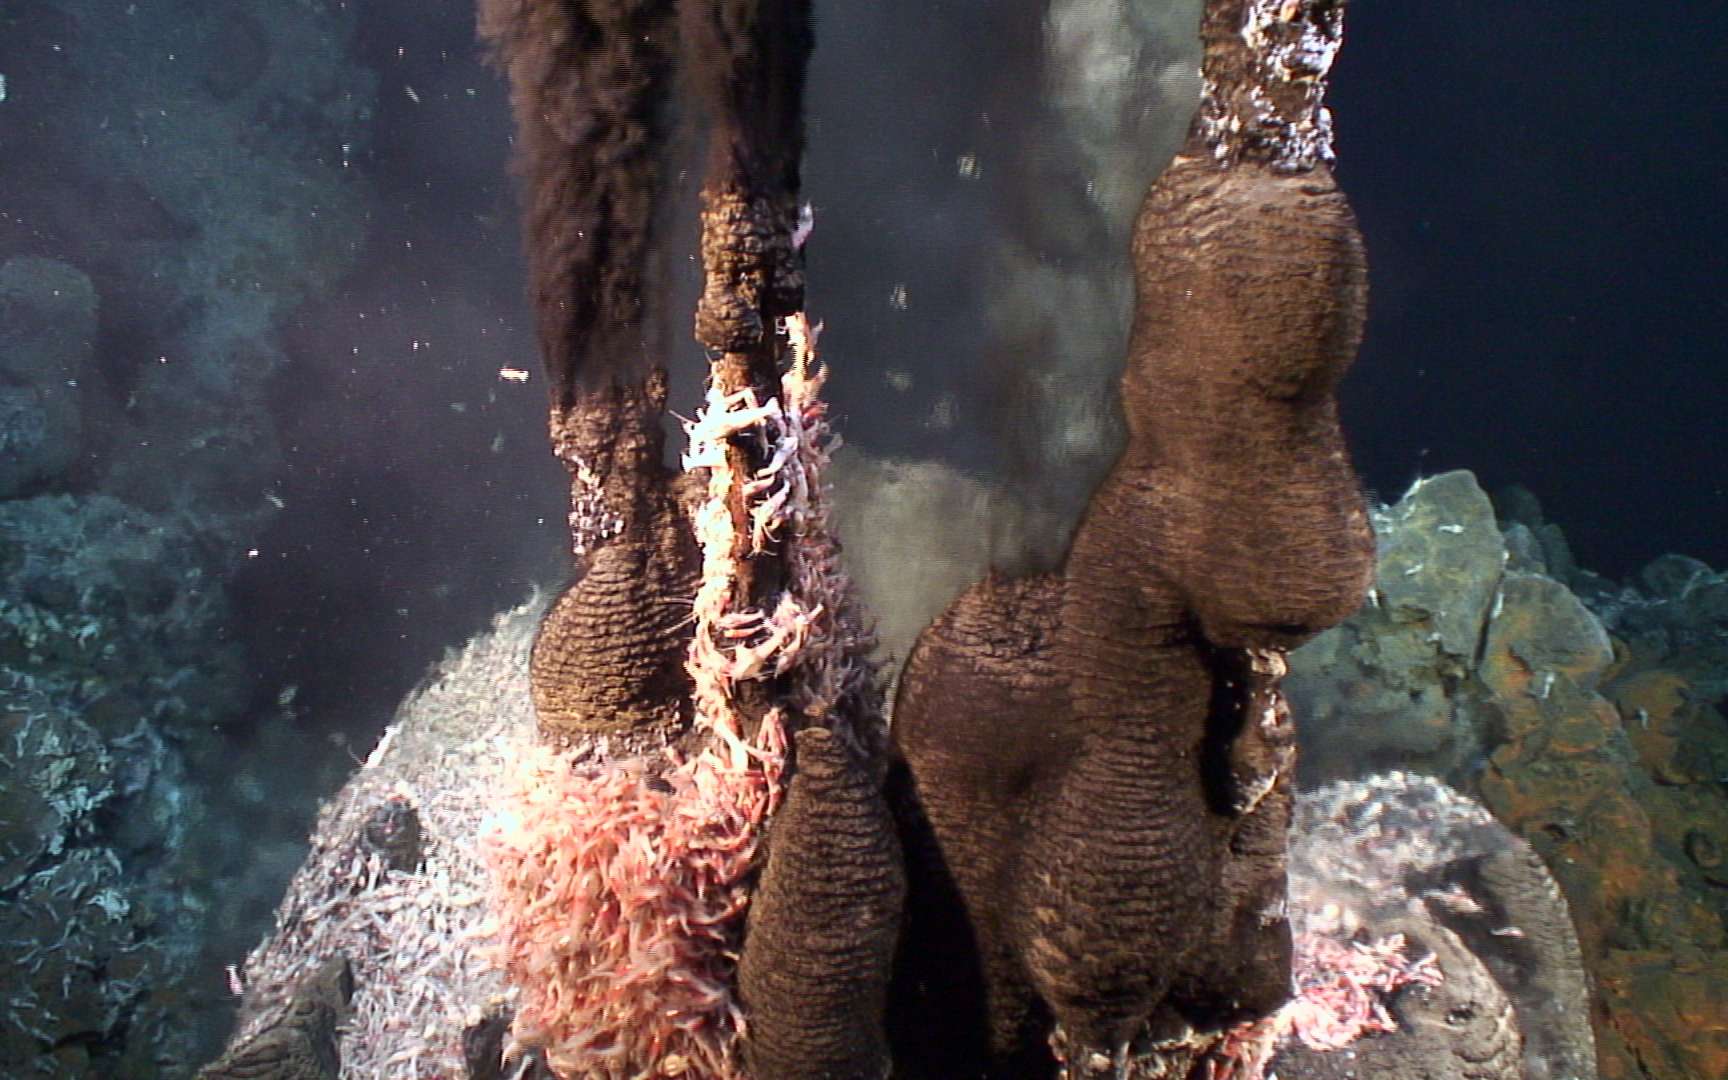 Image de cheminées hydrothermales, autour desquelles la vie s'est développée à foison. © Victor 6000, Ifremer, nc nd